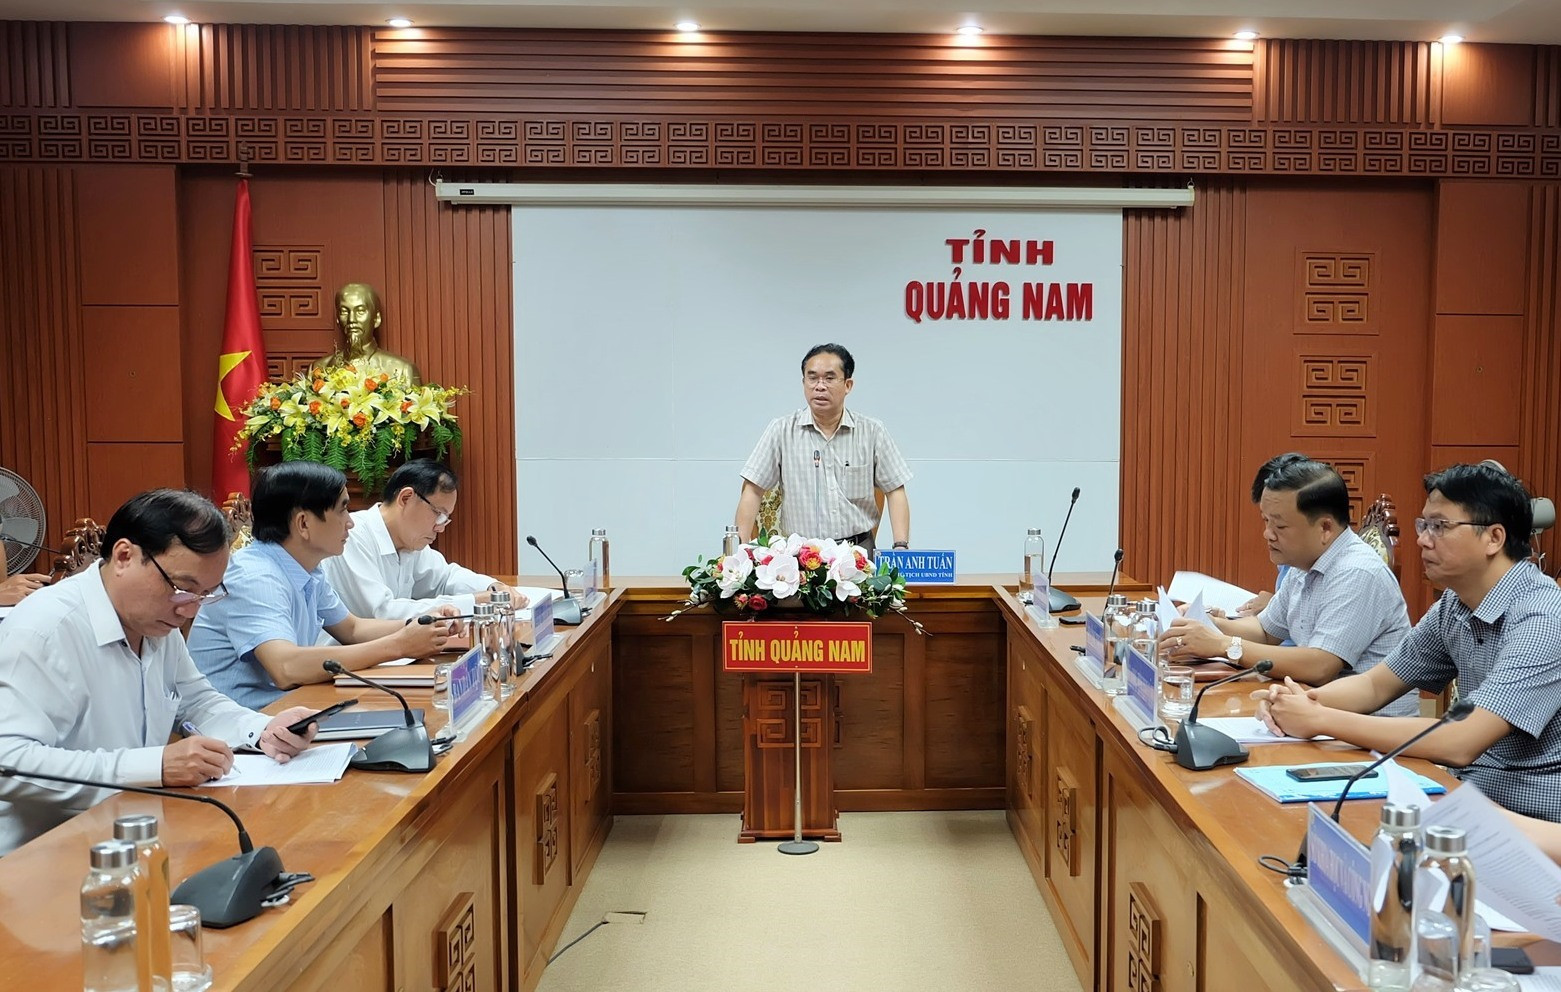 Phó Chủ tịch UBND tỉnh Trần Anh Tuấn chủ trì buổi làm việc. Ảnh: S.L